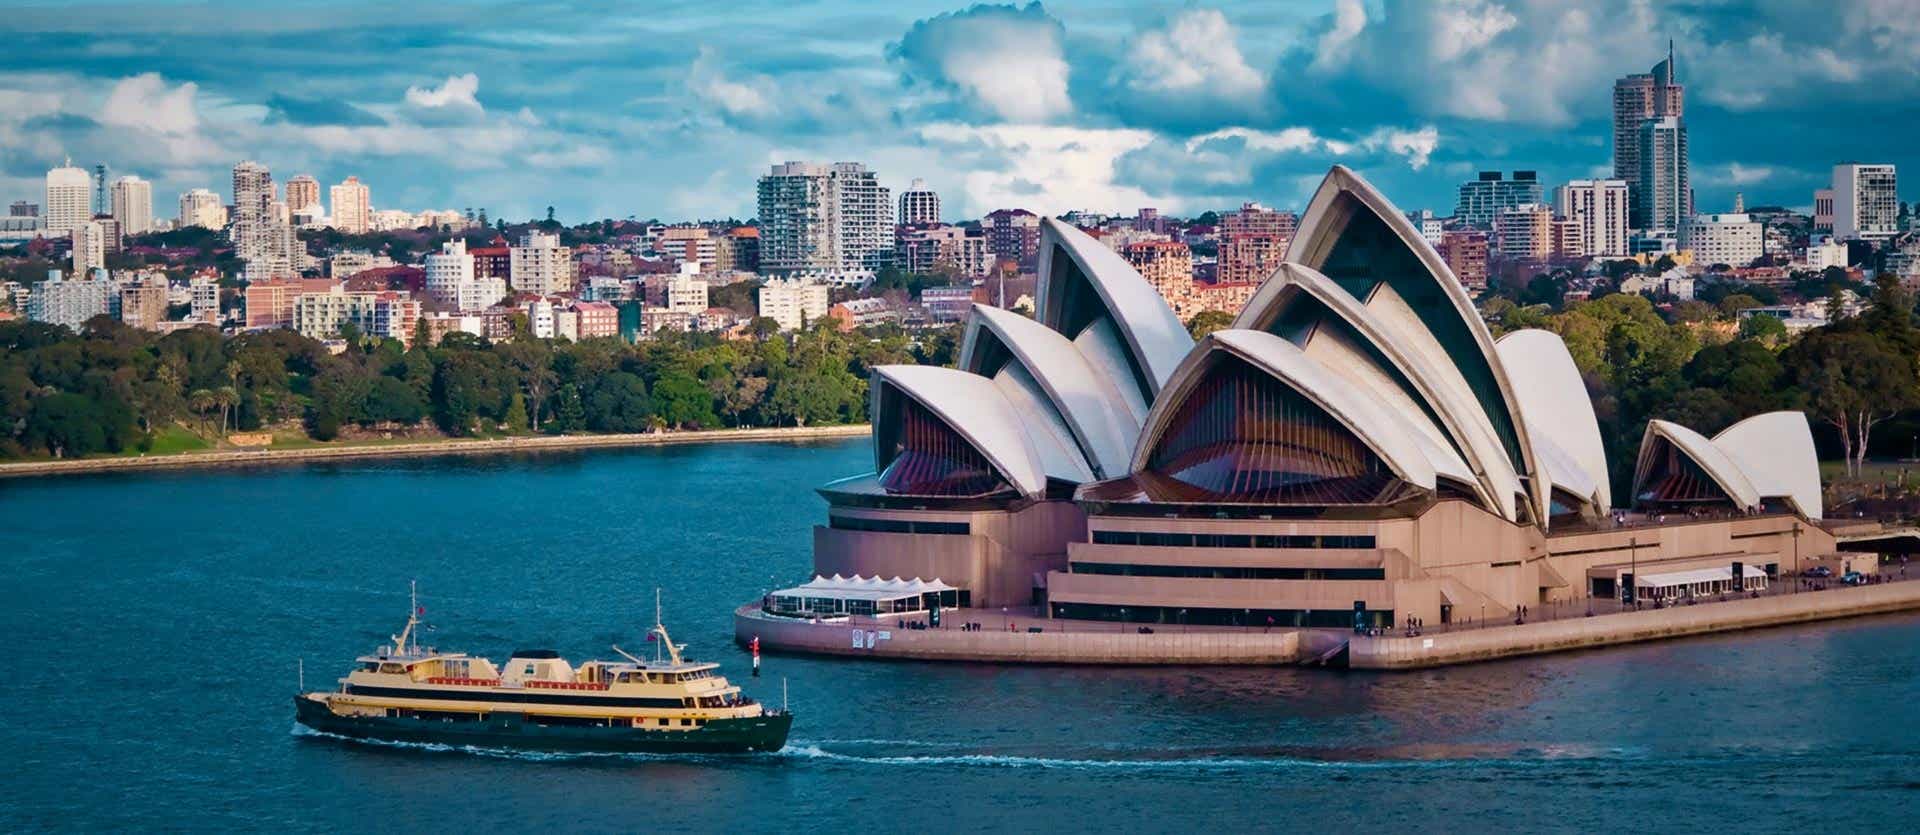 Opera House <span class="iconos separador"></span> Sydney <span class="iconos separador"></span> Australia